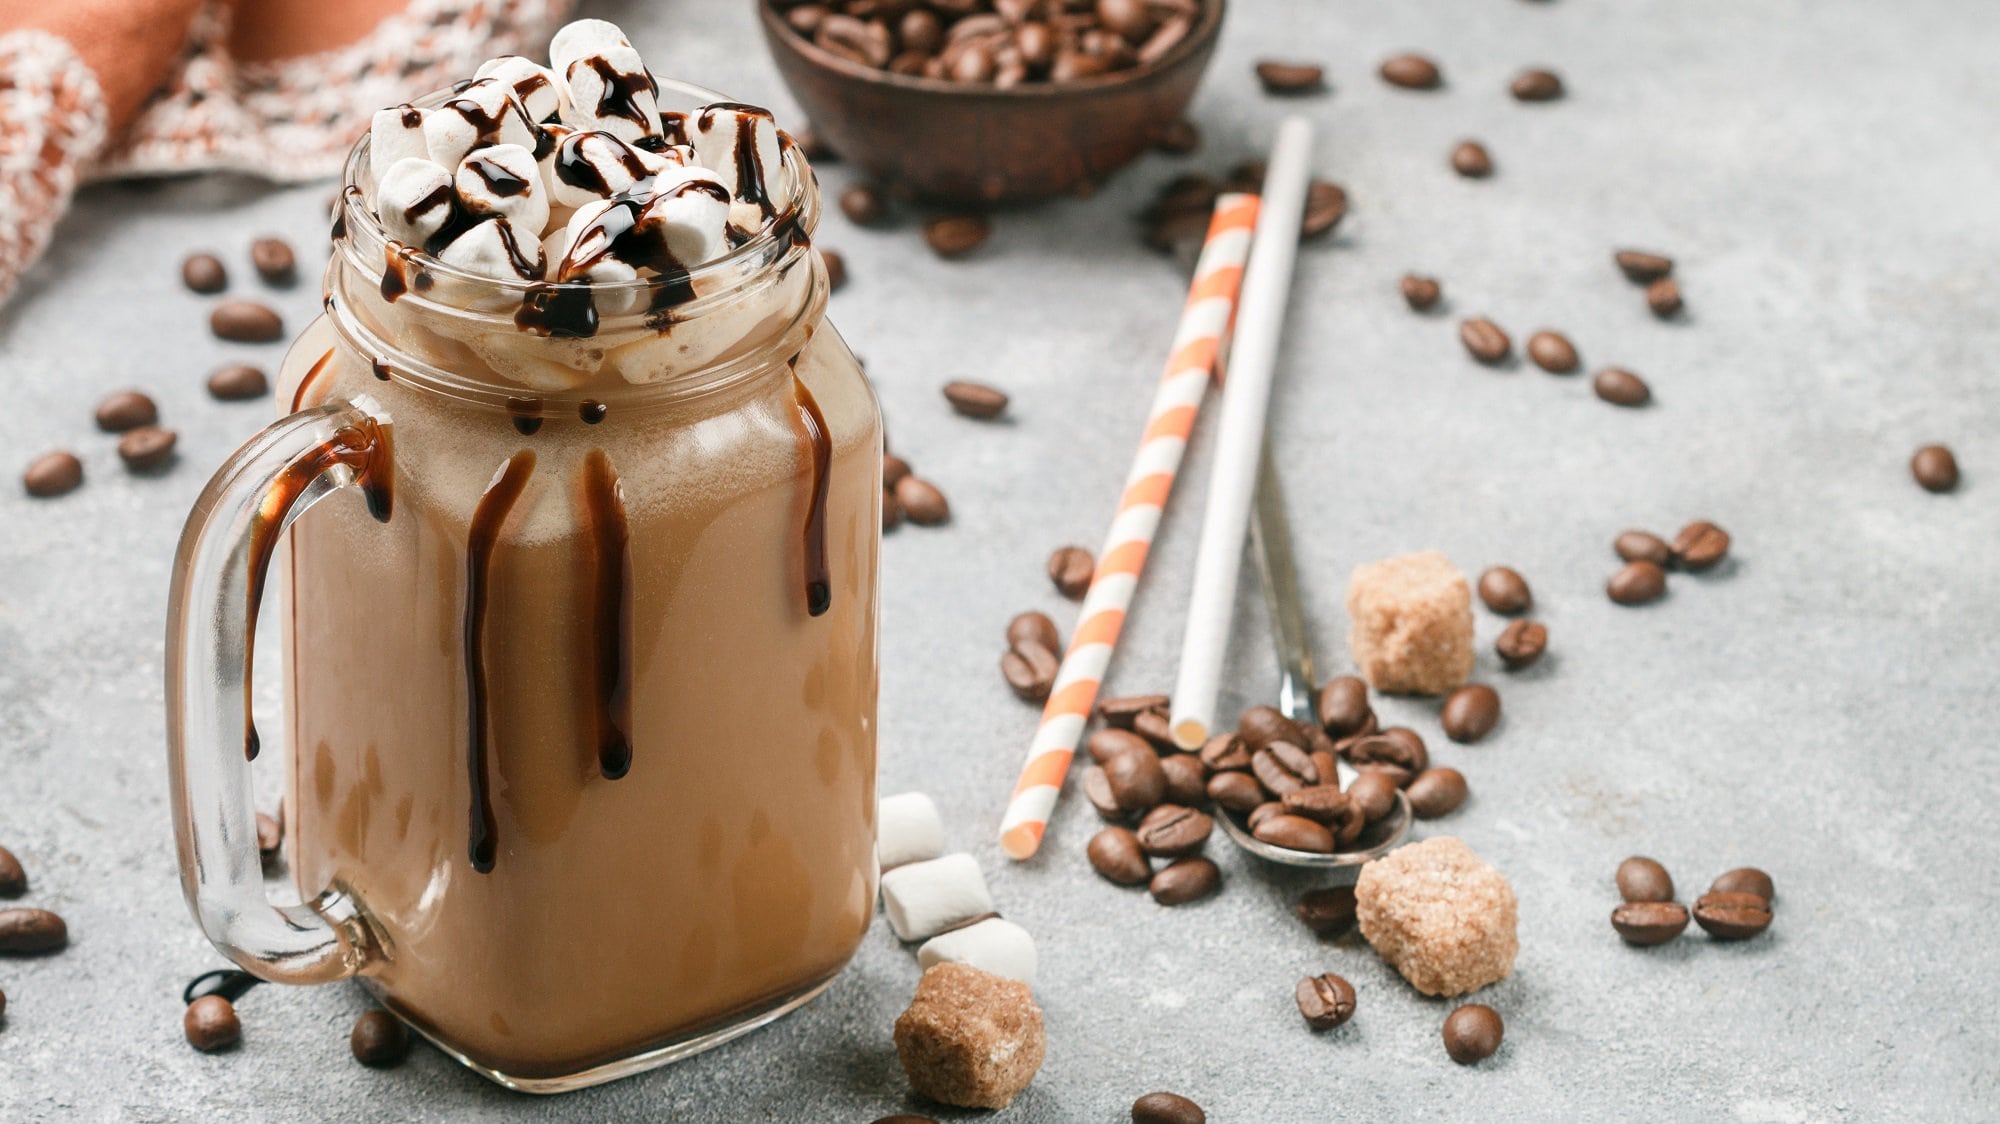 Kaffee-Shake in einem Glas mit Henkel, getoppft mit Marshmallows und Schokosauce, daneben Kaffeebohnen und Stohhalme.